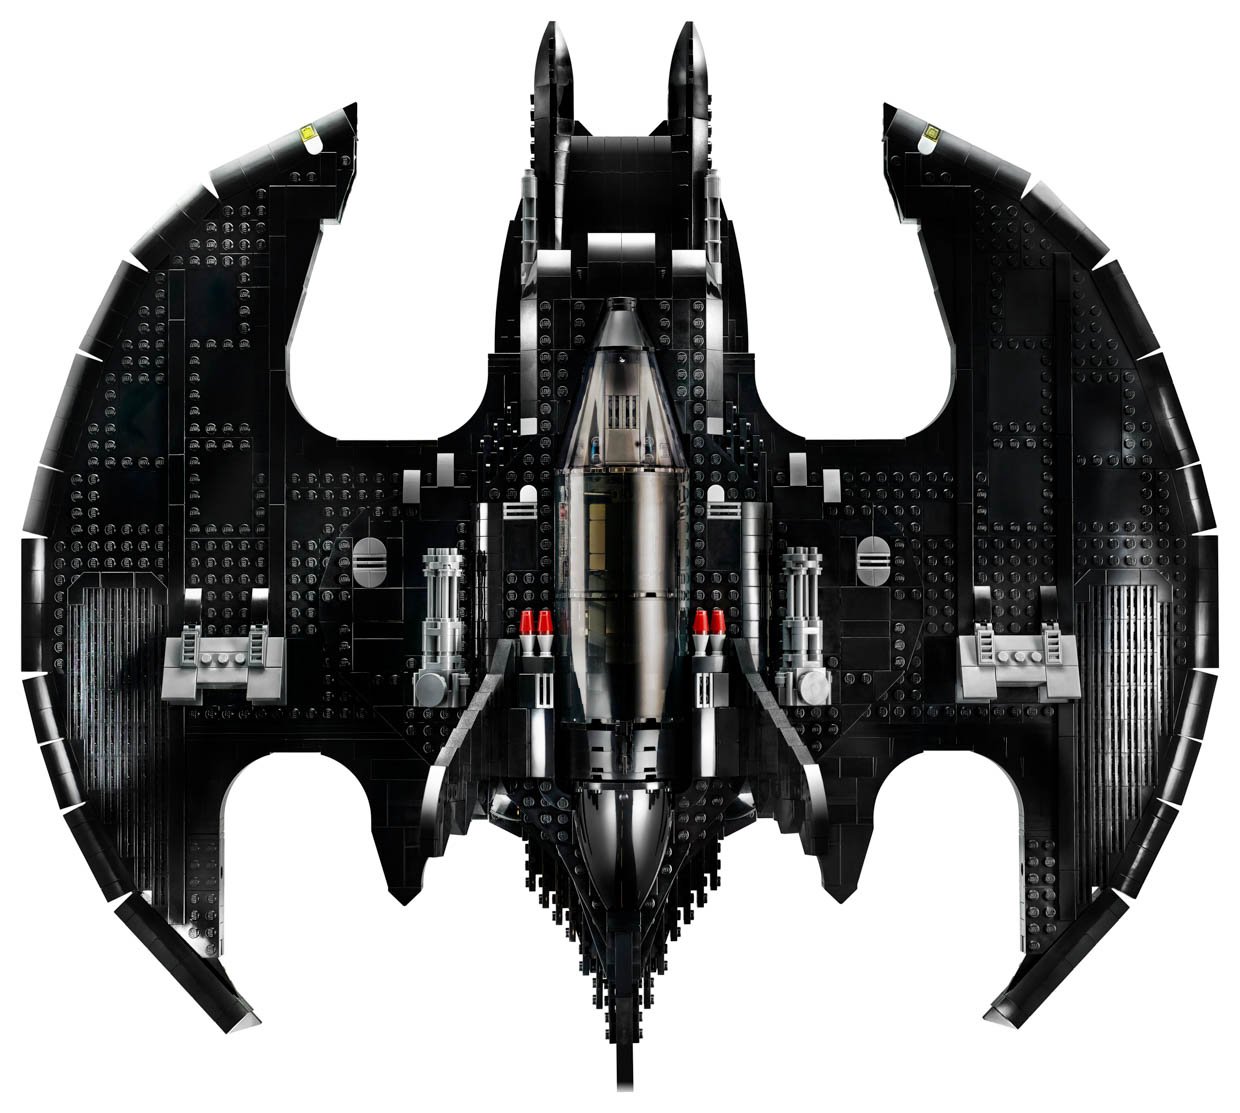 LEGO 1989 Batman Batwing